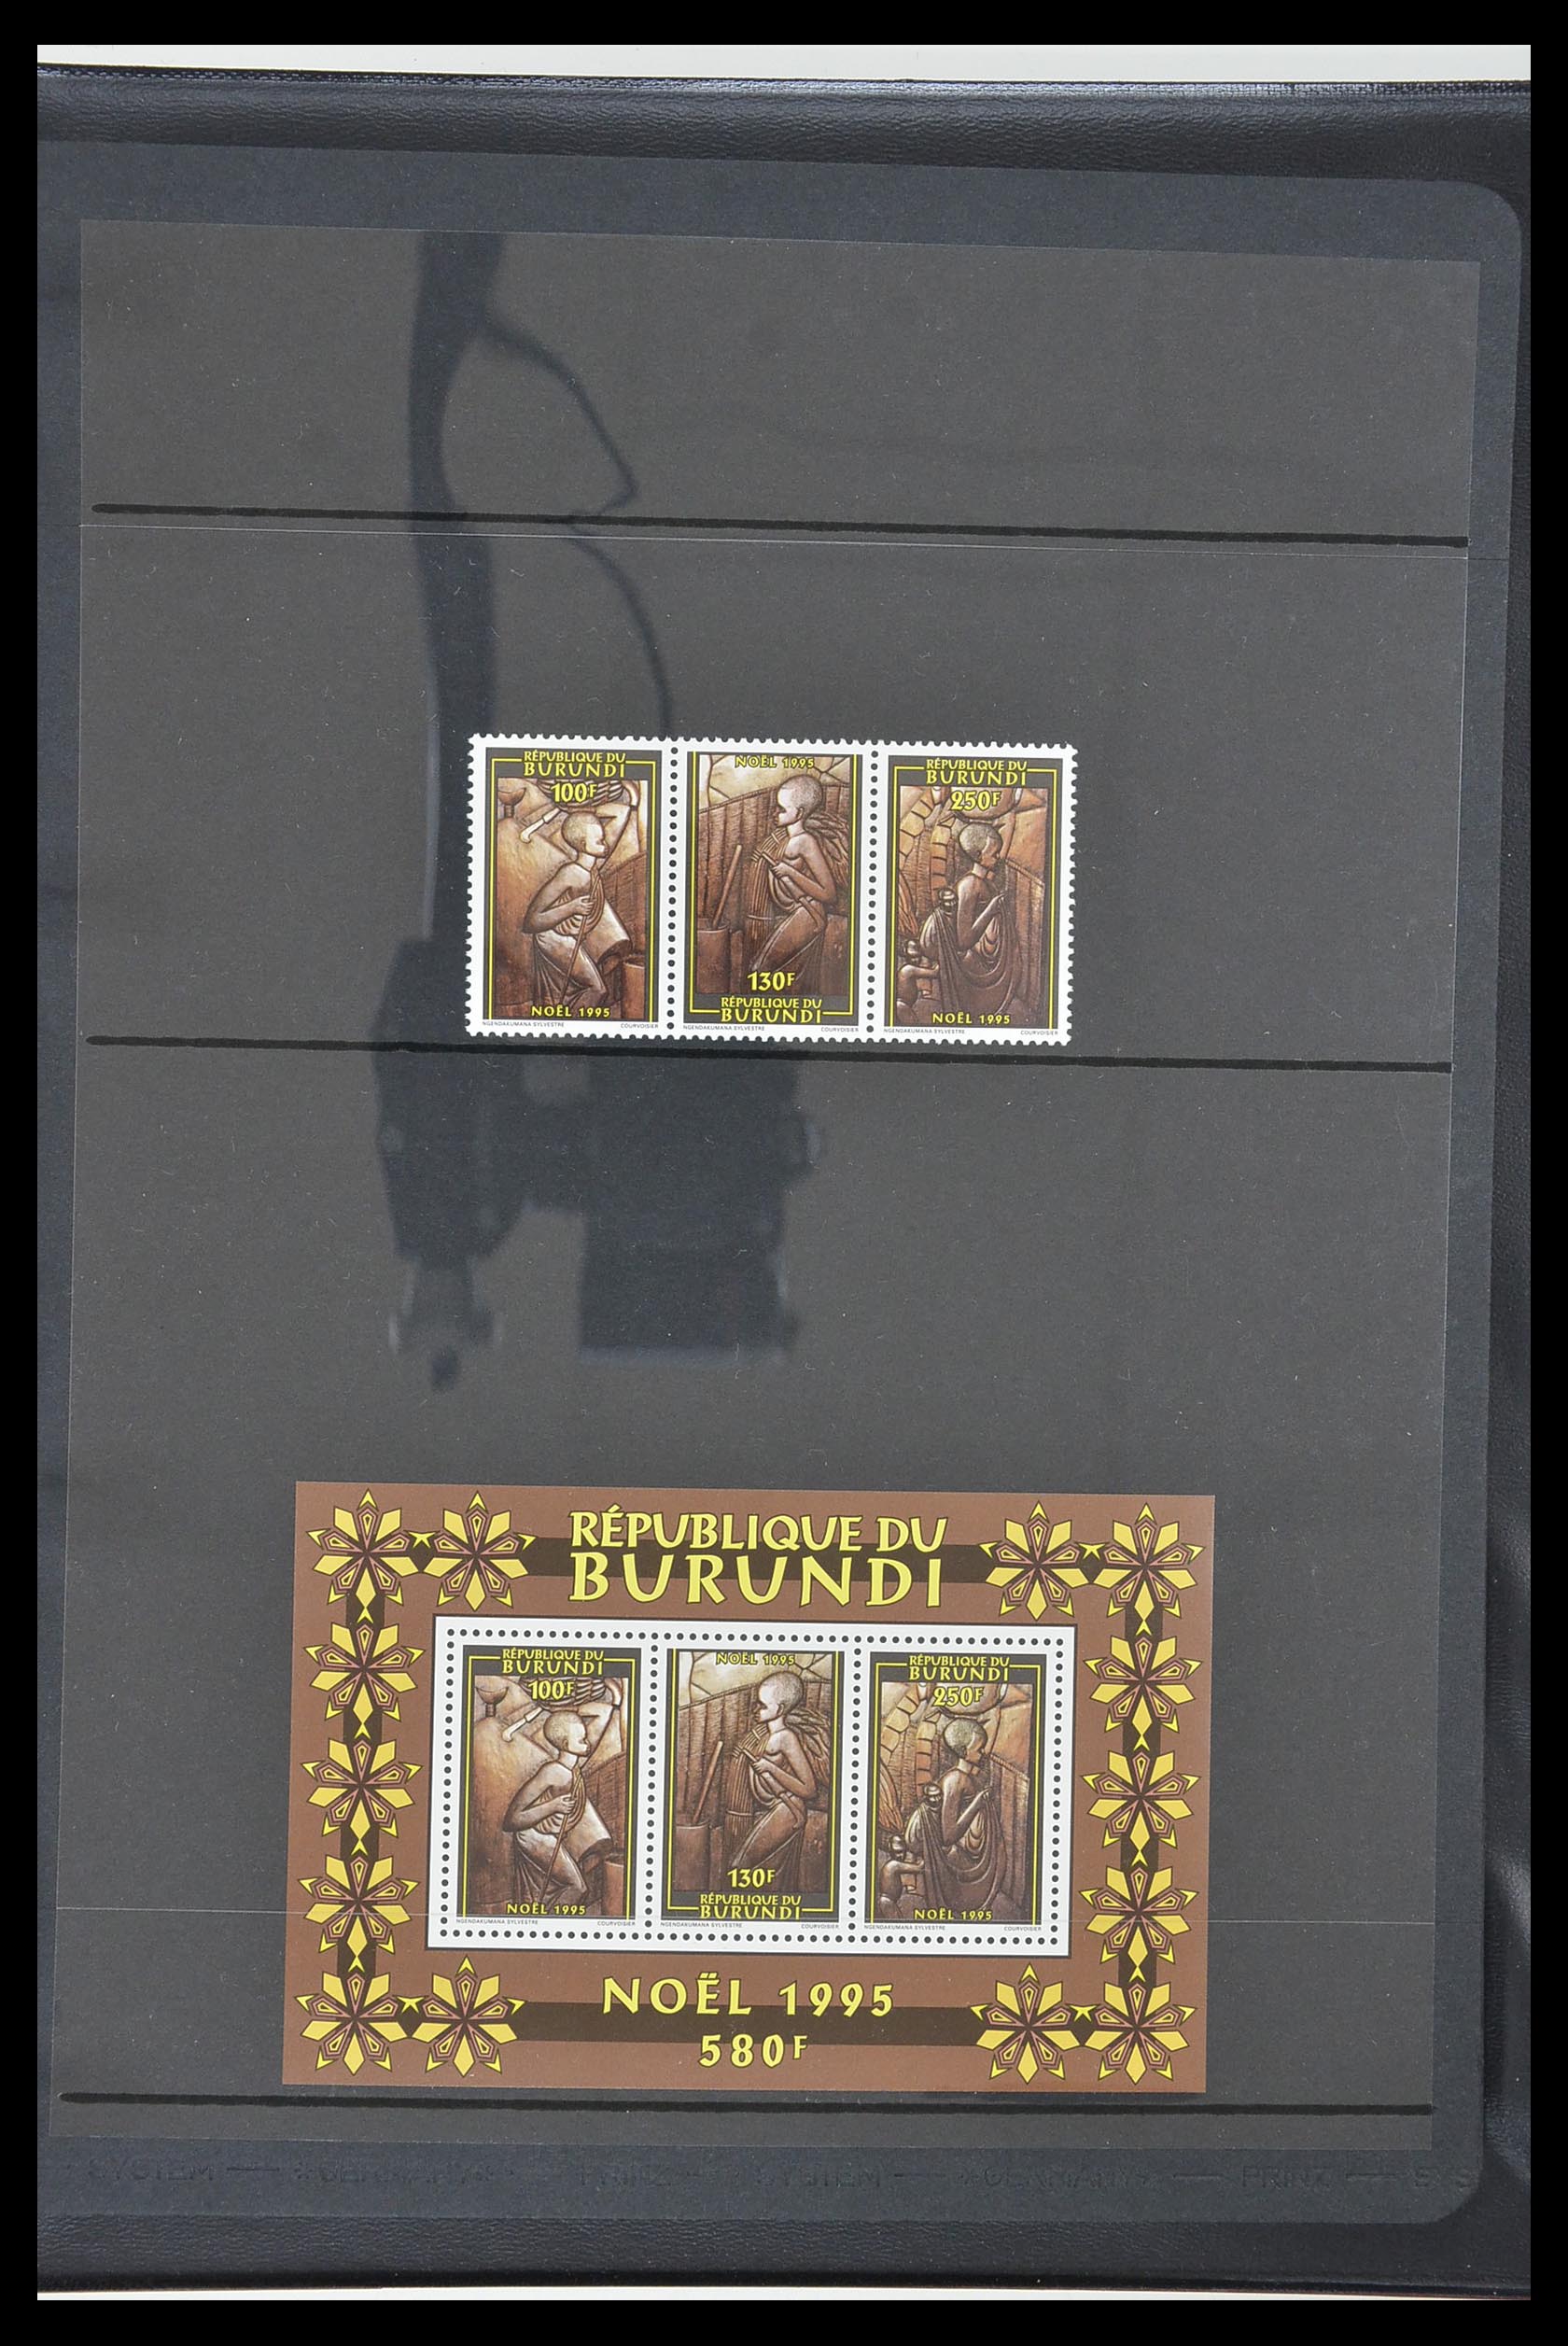 33764 361 - Stamp collection 33764 Burundi 1962-2004.